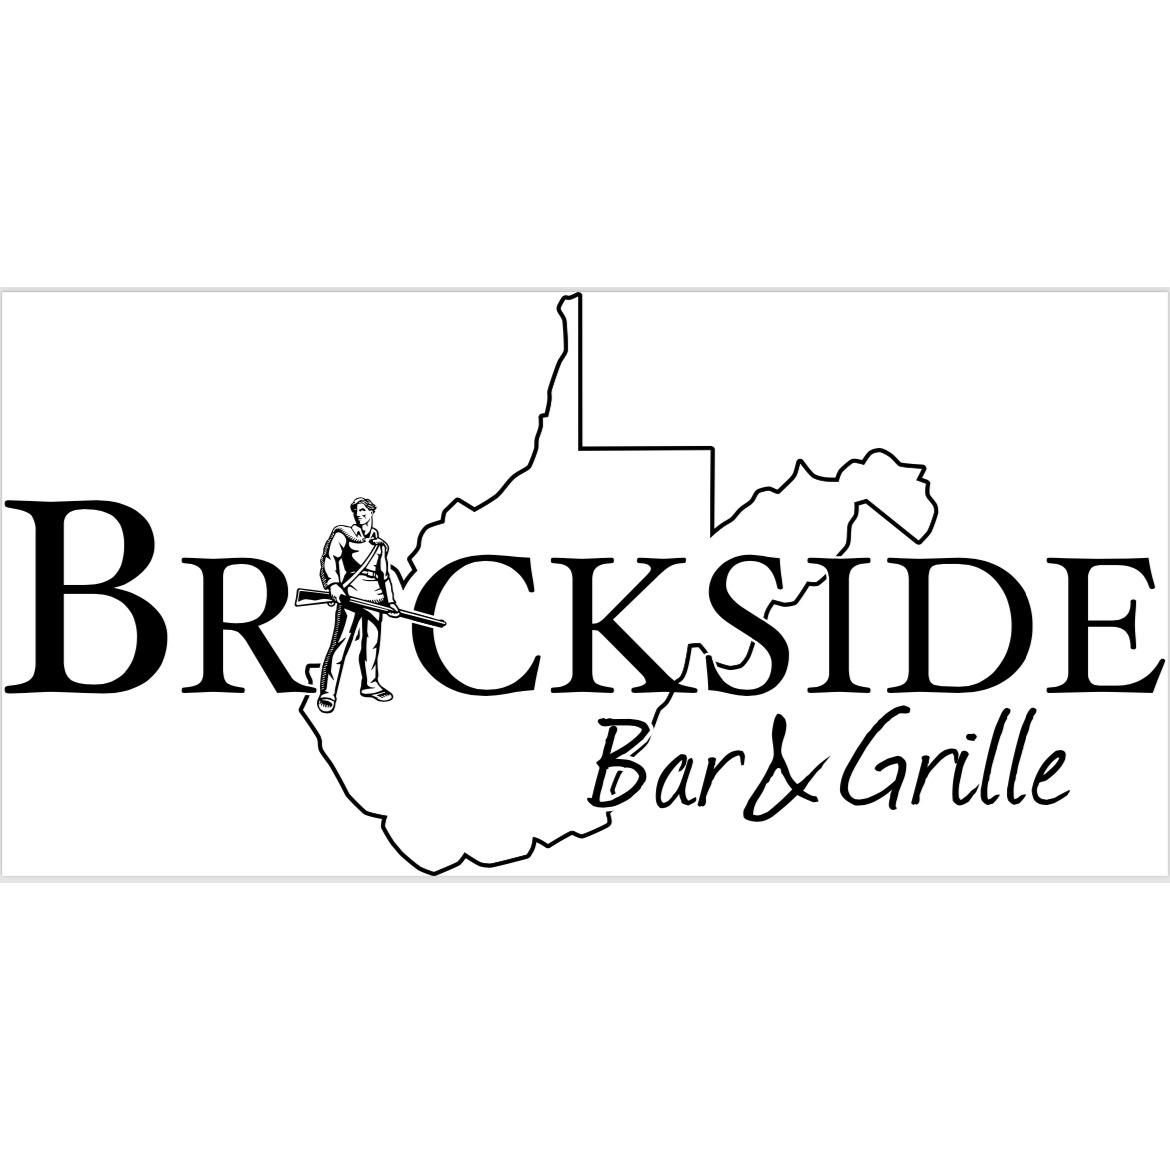 Brickside Bar & Grille Fairmont Fairmont (304)534-8457